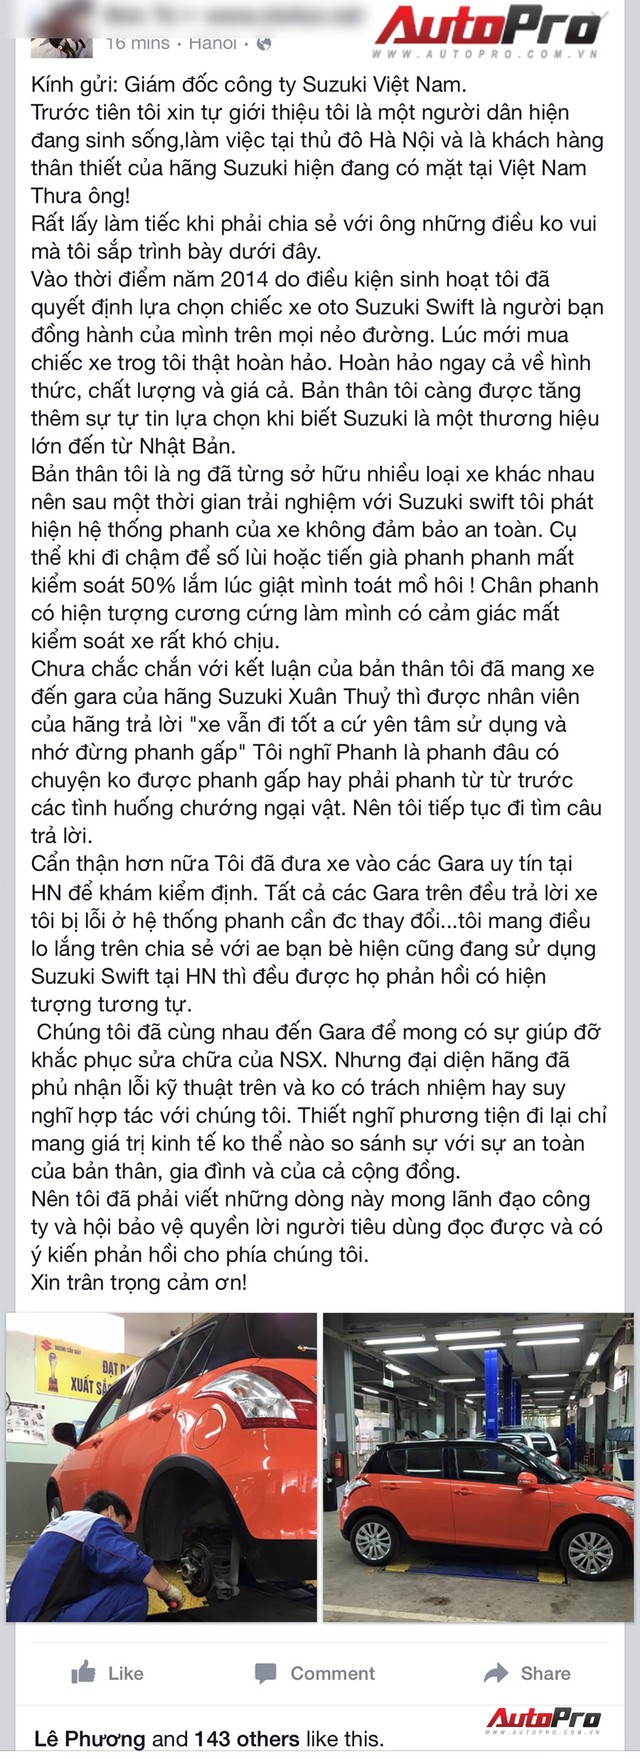 
Phản ánh của người dùng Việt Nam về hiện tượng cứng chân phanh trên Suzuki Swift.
